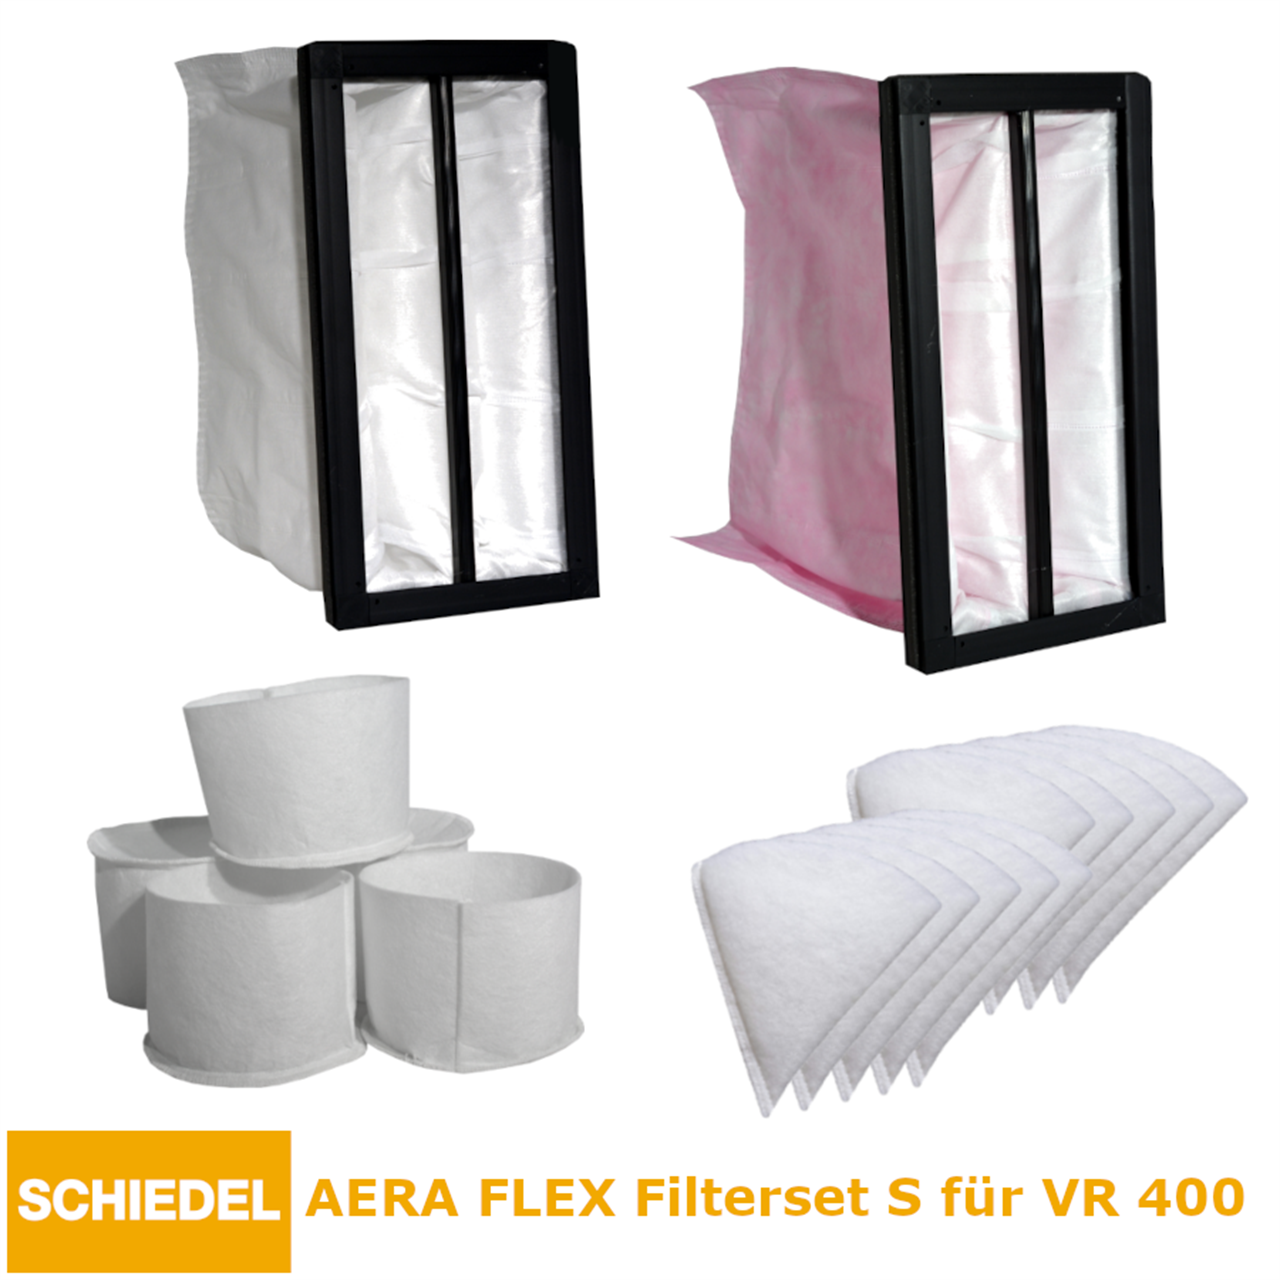 AERA FLEX Filterset S für VR 400 145220